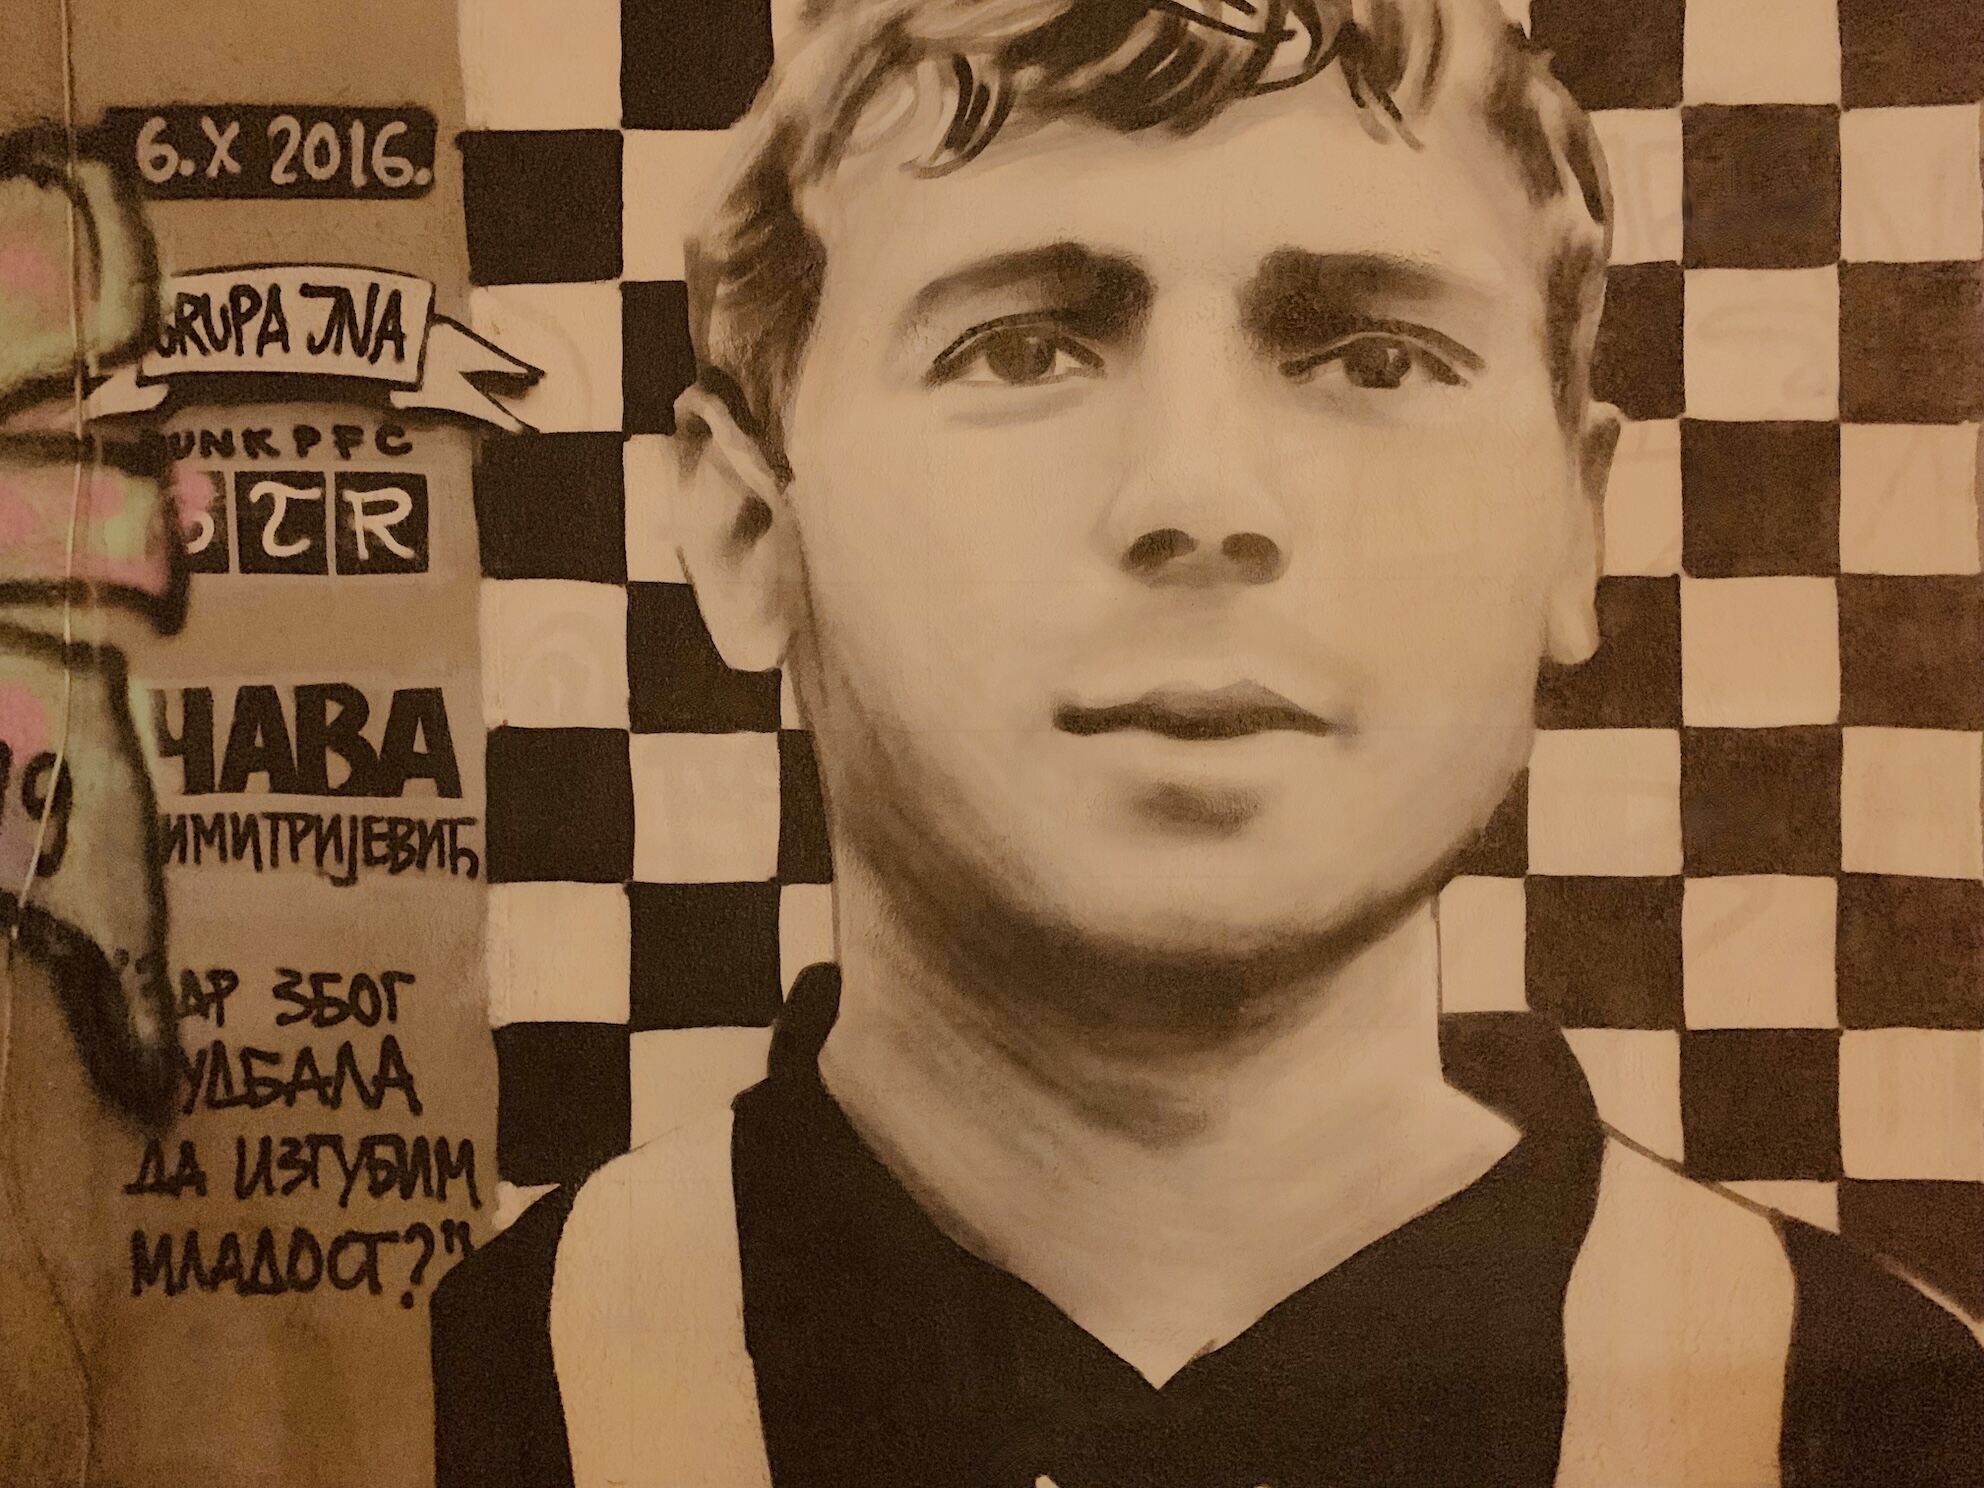 Mural of the Serbian footballer Zoran Dimitrijevic in Belgrade